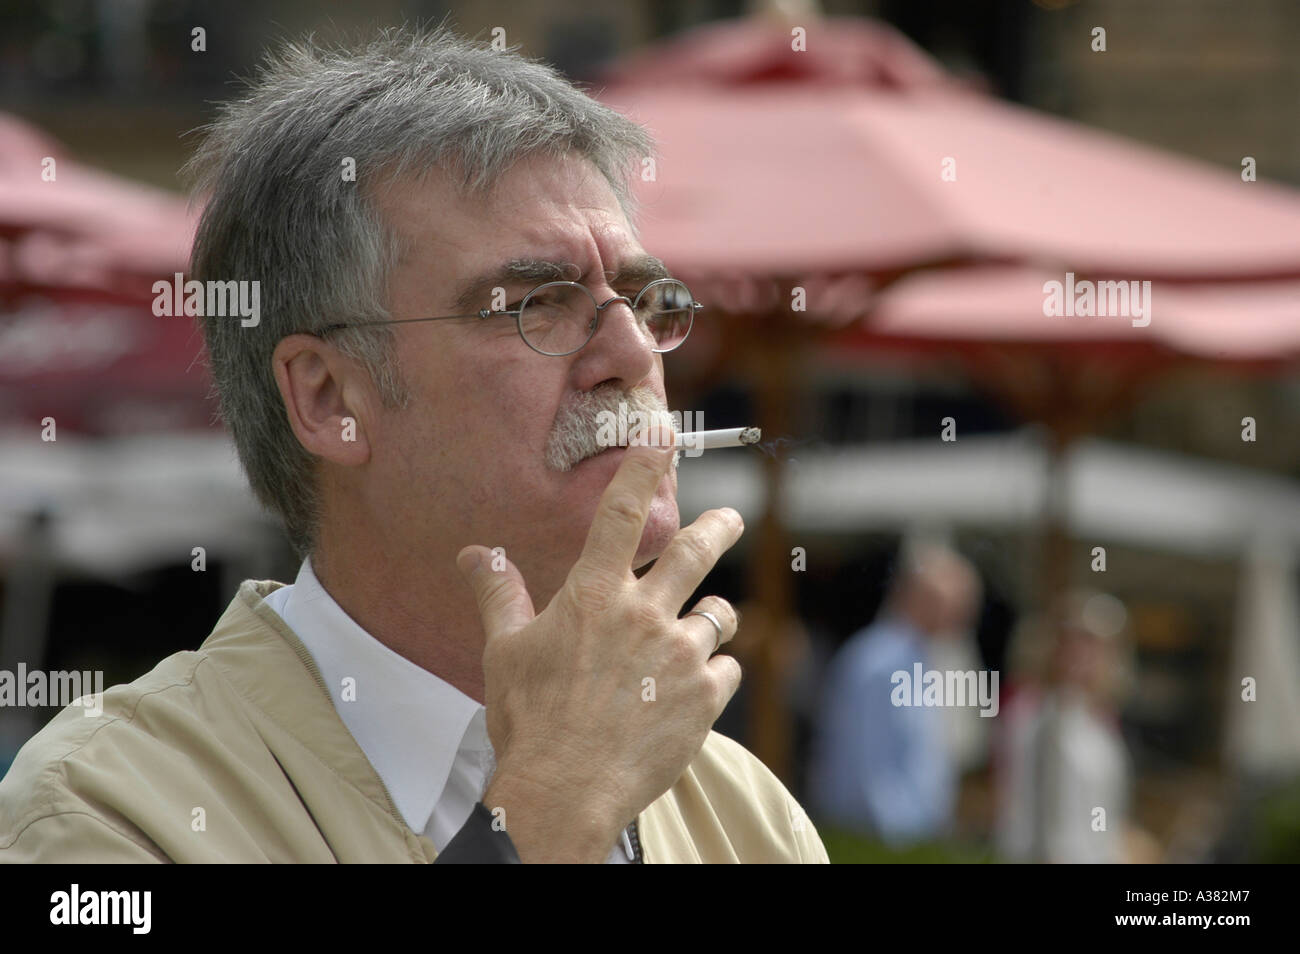 Aelterer Mann Rentner Senior raucht Raucher Nikotin Sucht grau grauhaarig Stock Photo